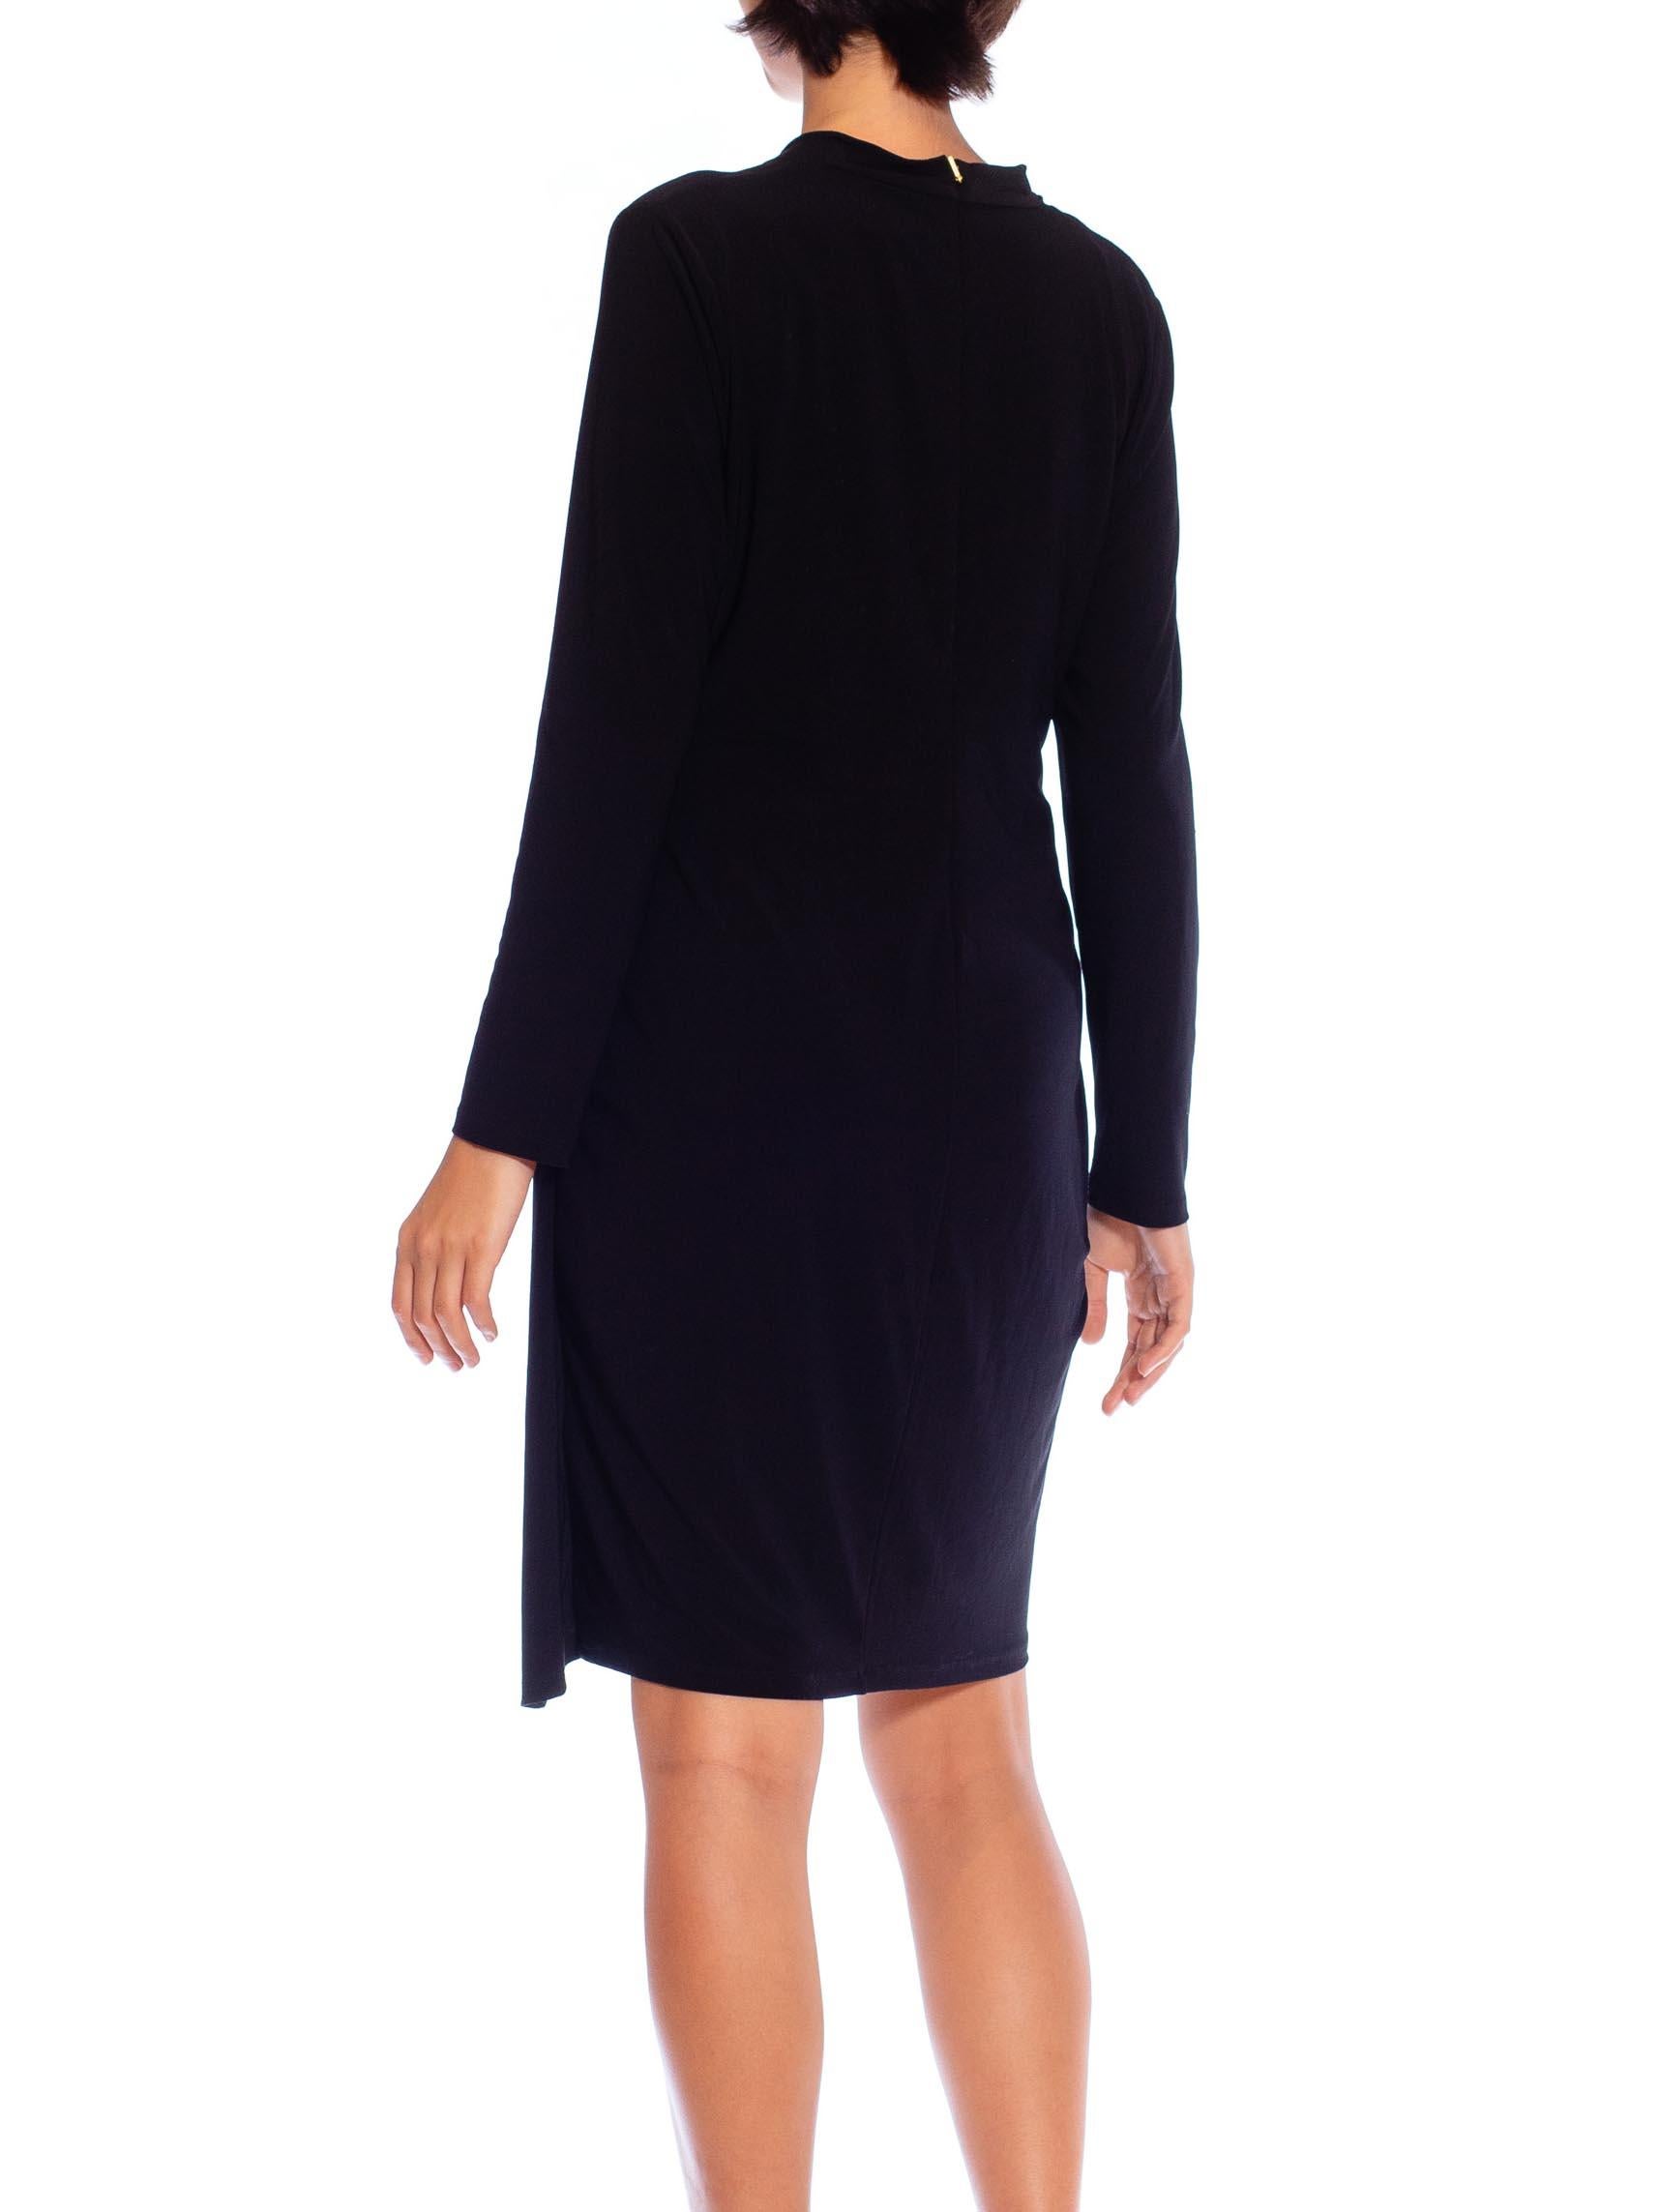 1990S DONNA KARAN Black Poly/Lycra Jersey Slinky Long Sleeve Cocktail Dress XL For Sale 6